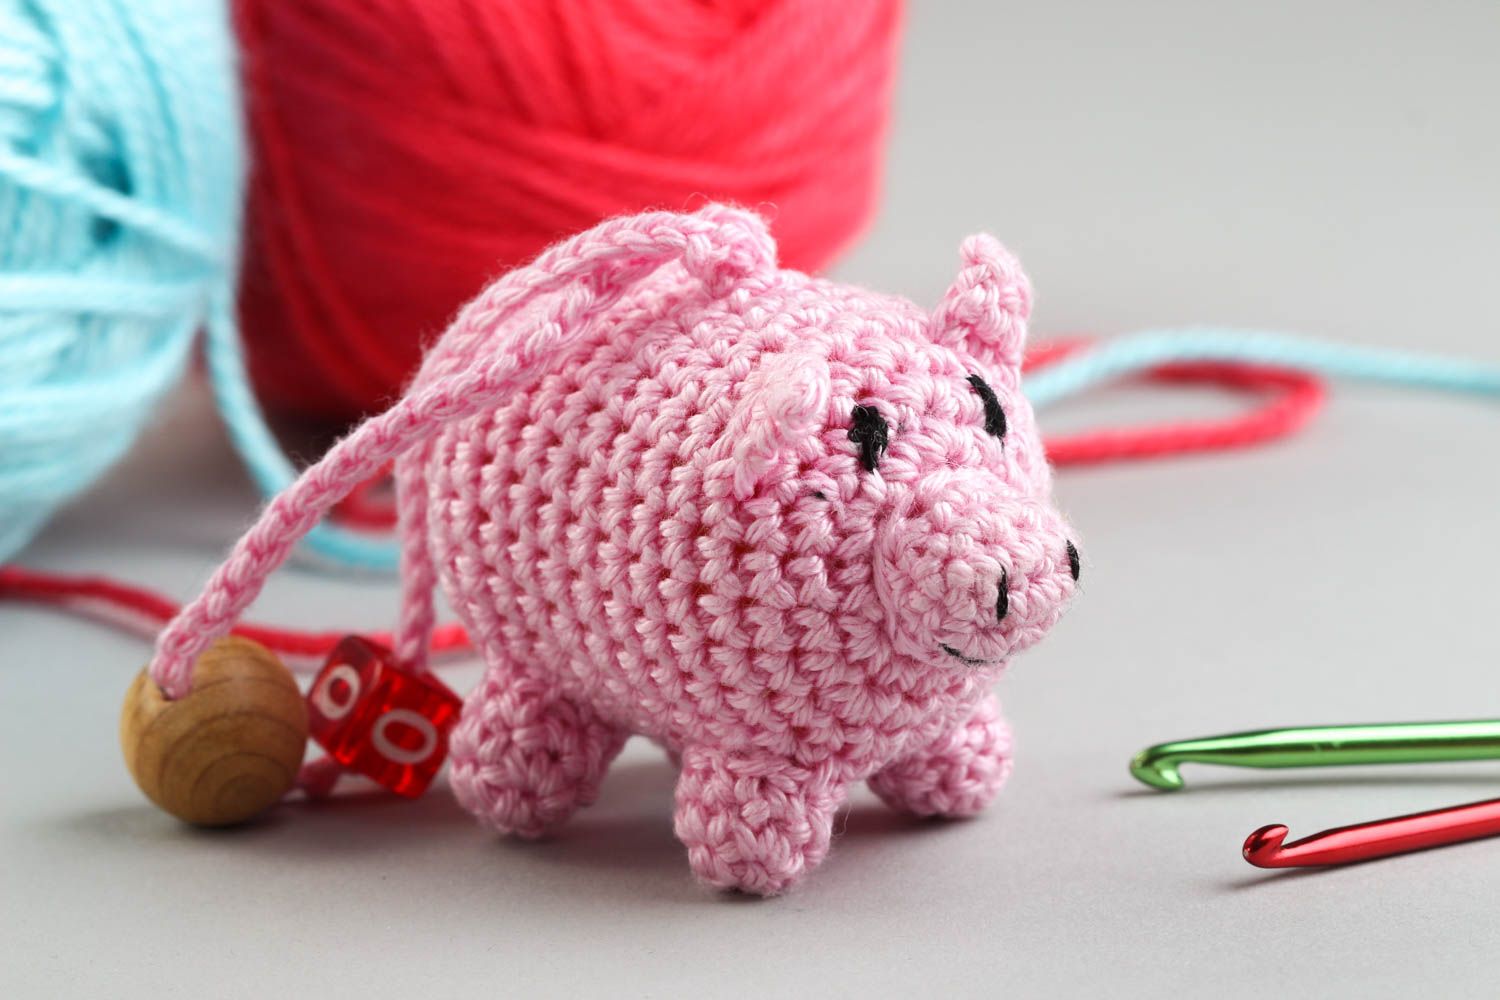 Rattle toy for babies handmade crocheted soft toys nursery decor ideas photo 1